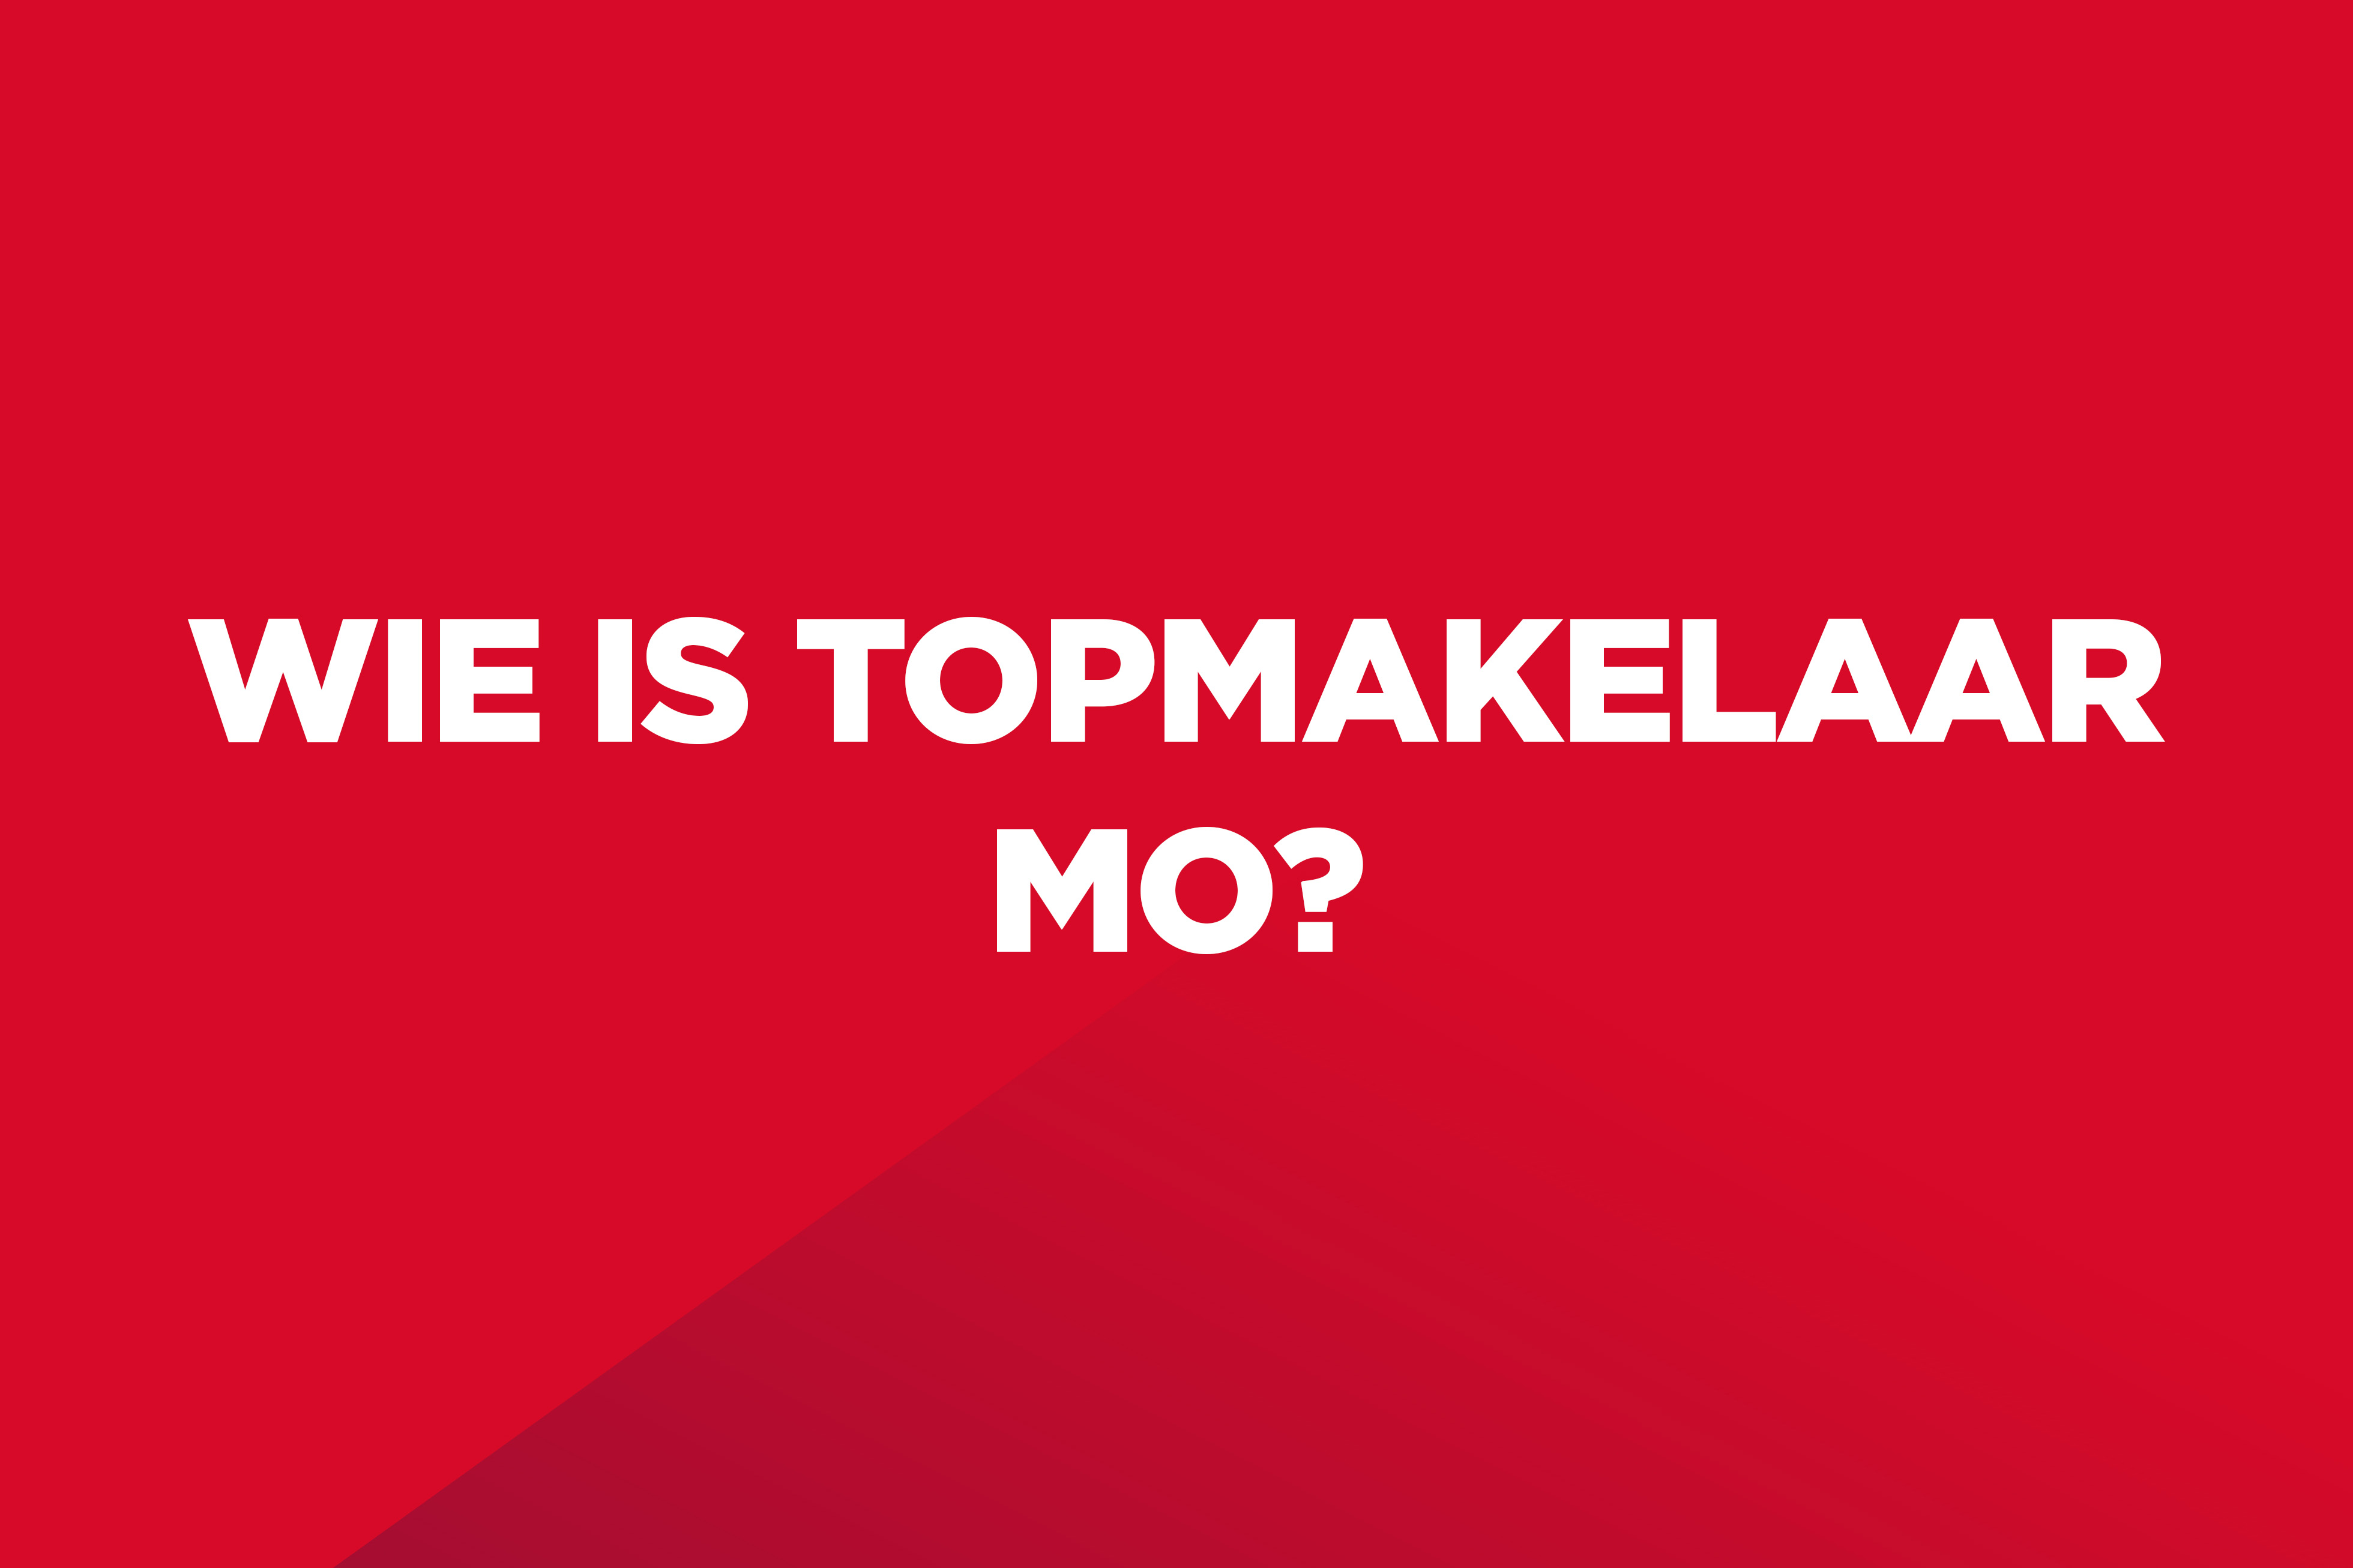 Dit is een rood kleurvlak met witte tekst op: "Wie is Topmakelaar Mo?".